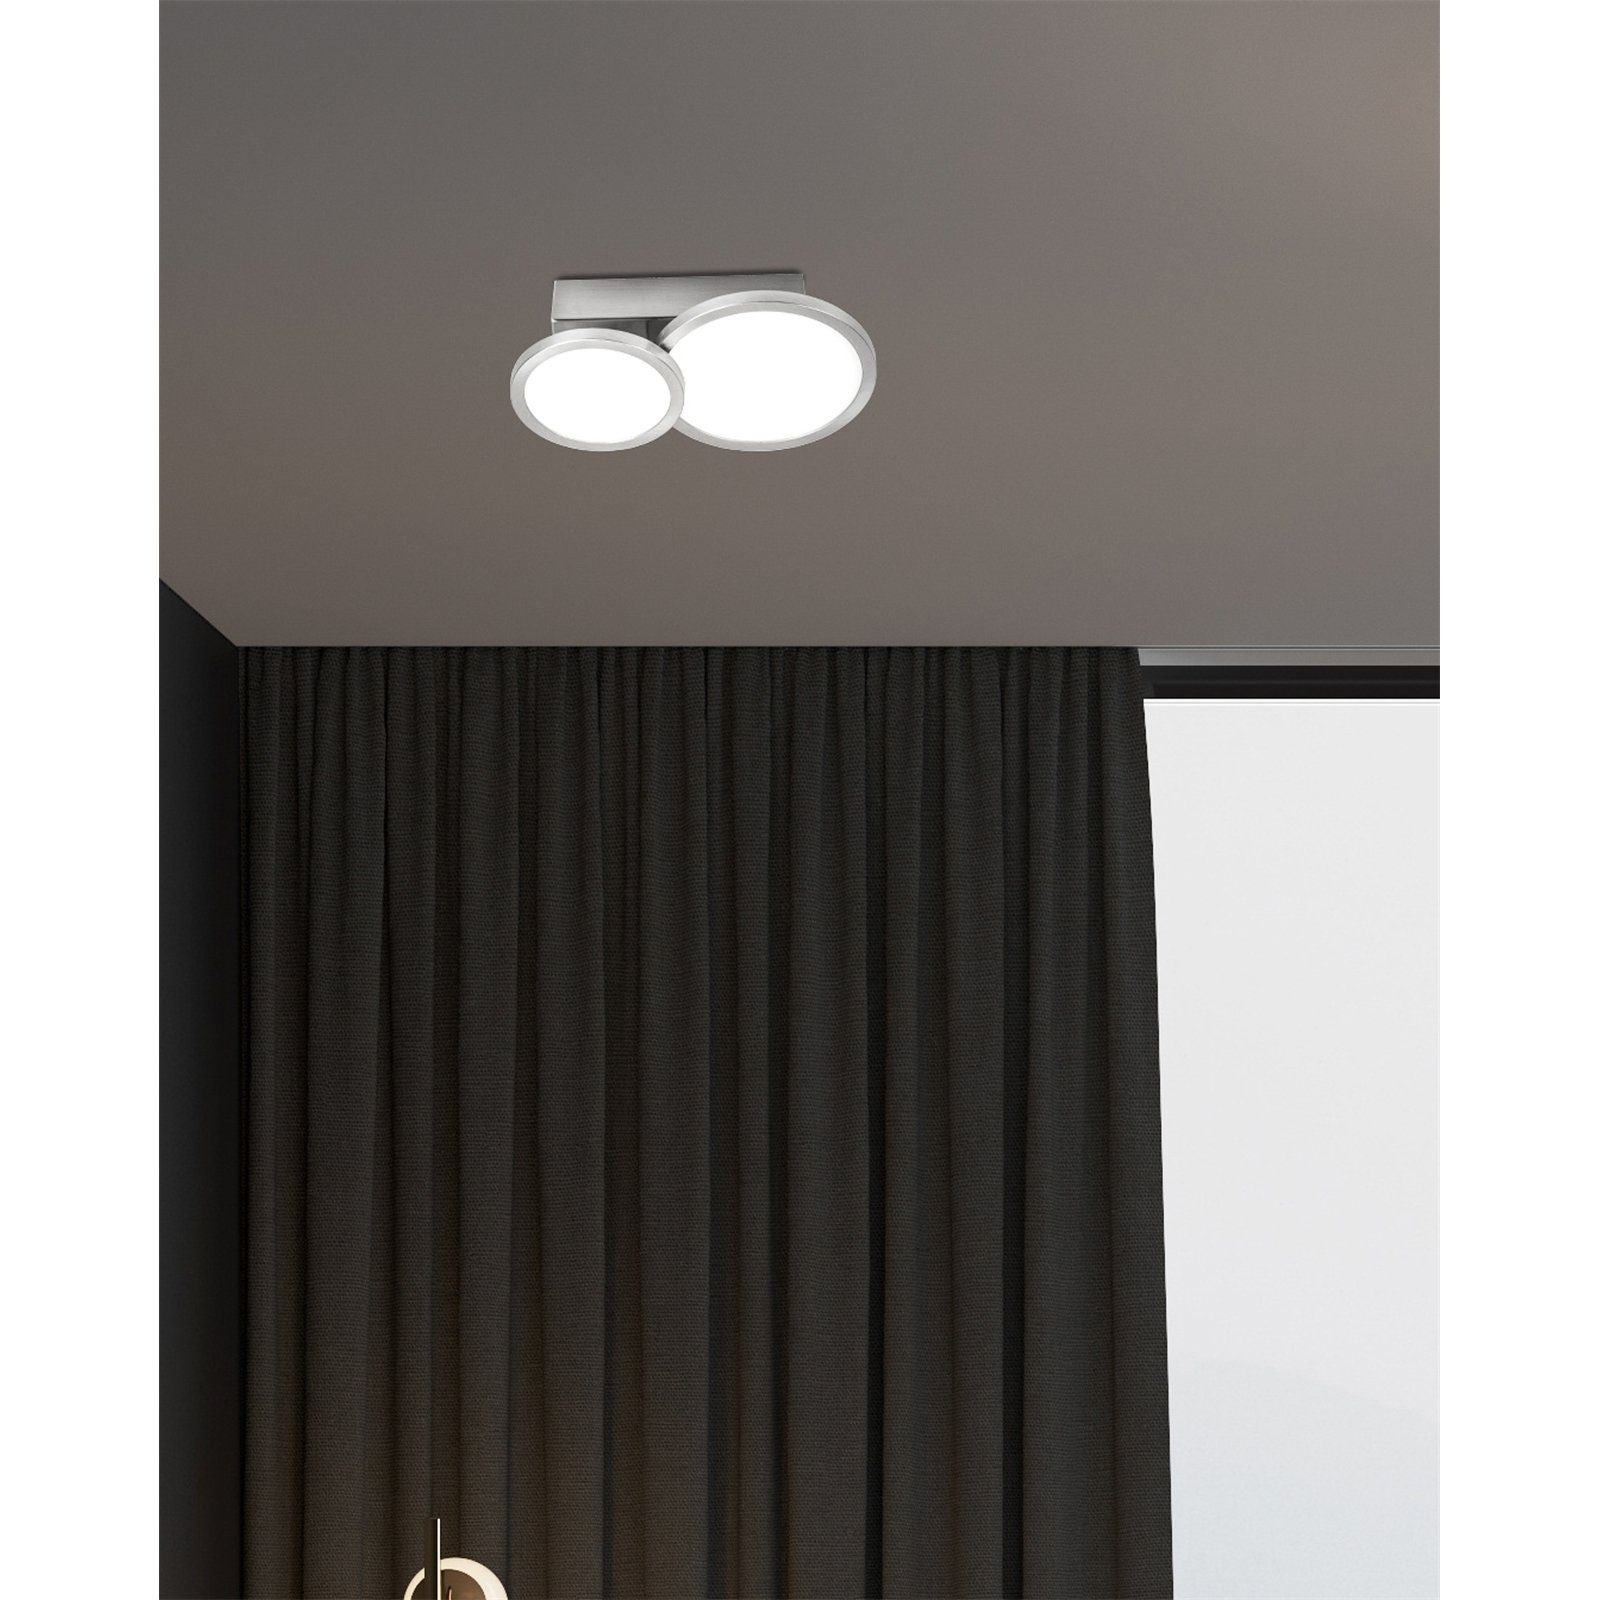 bmf-versand Nino Leuchten Deckenleuchte Deckenlampe LED, 2 NEO, Deckenleuchte flammig